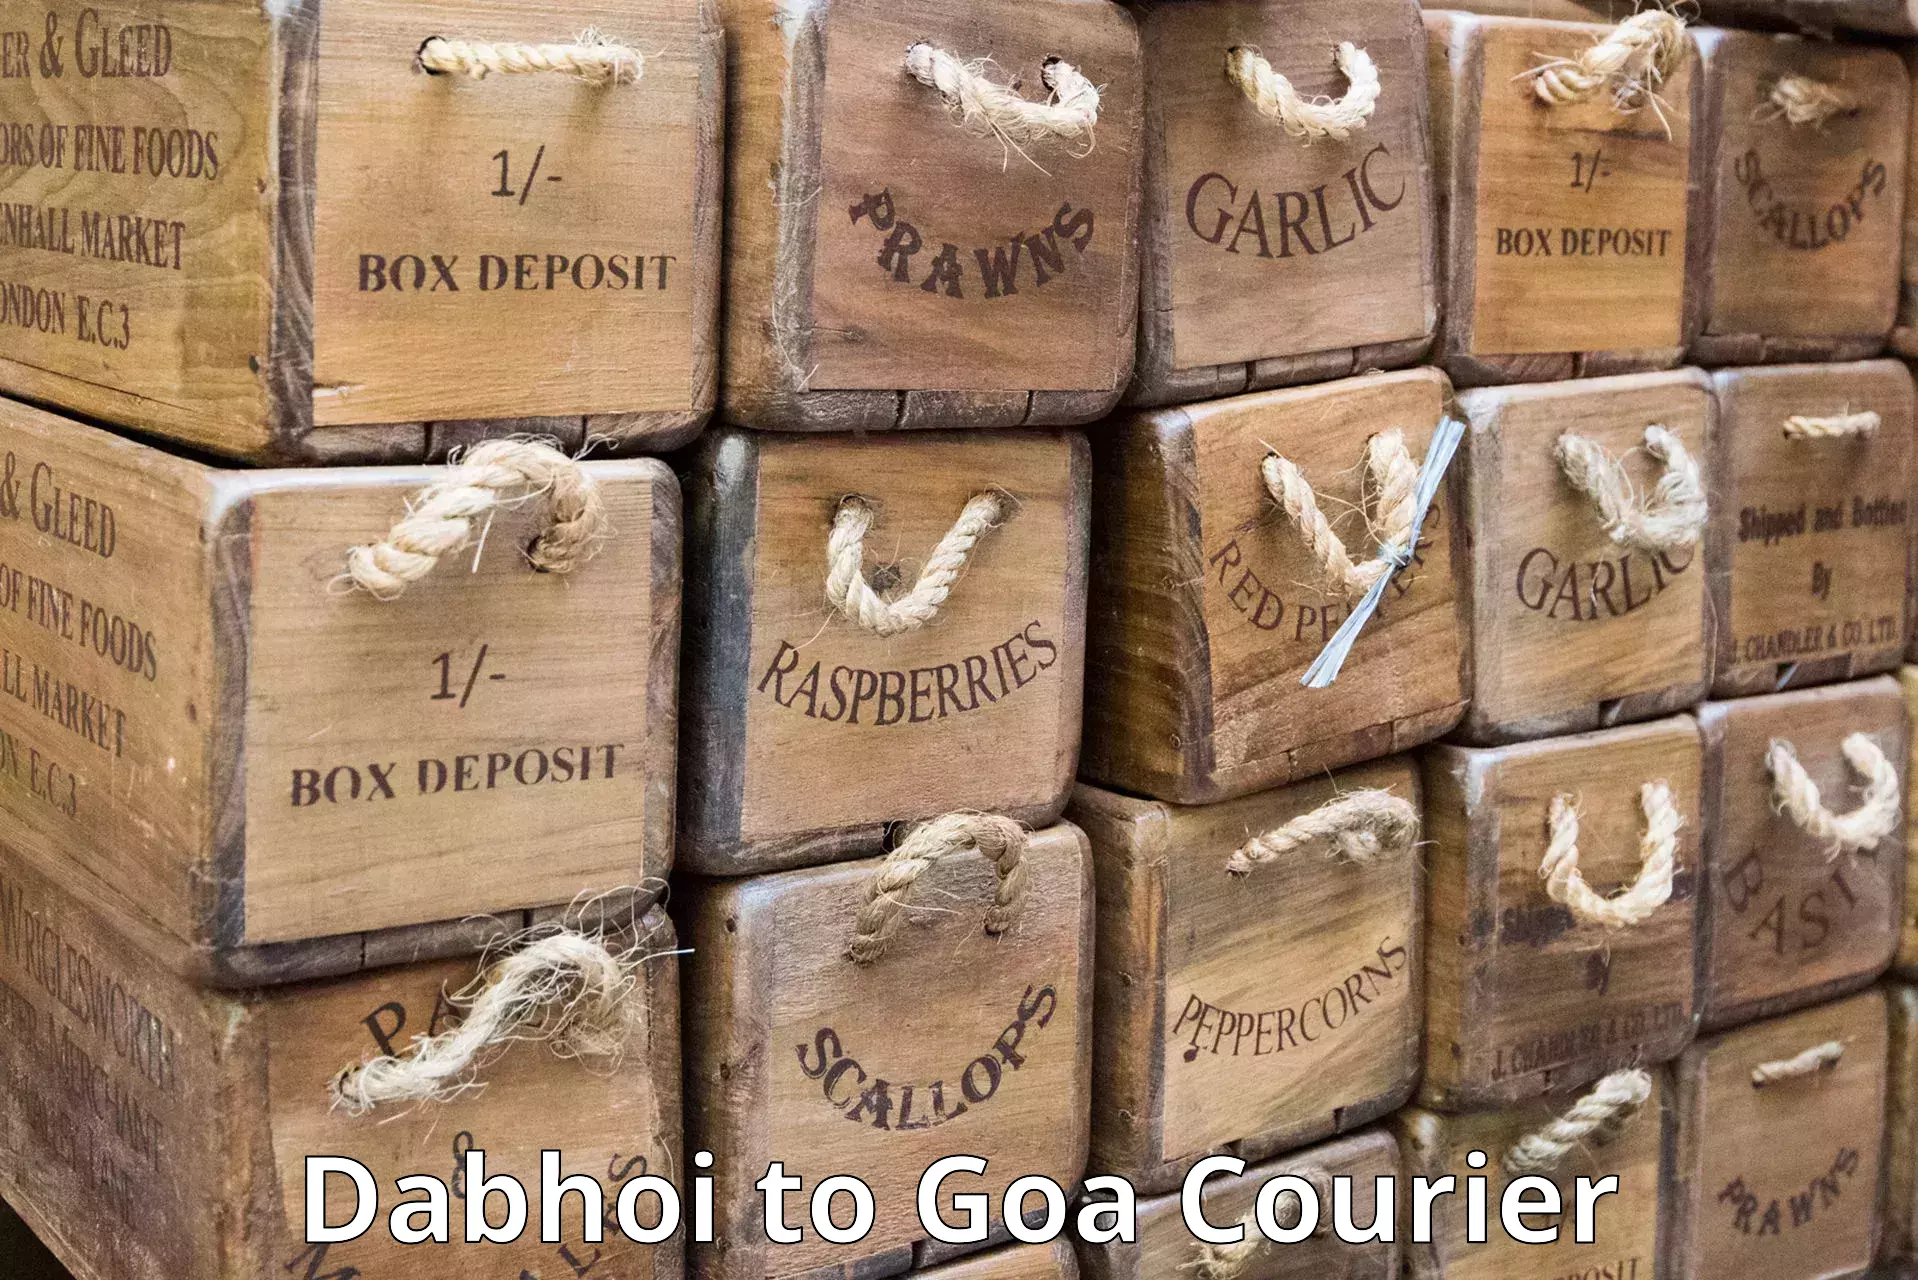 24/7 courier service Dabhoi to Mormugao Port